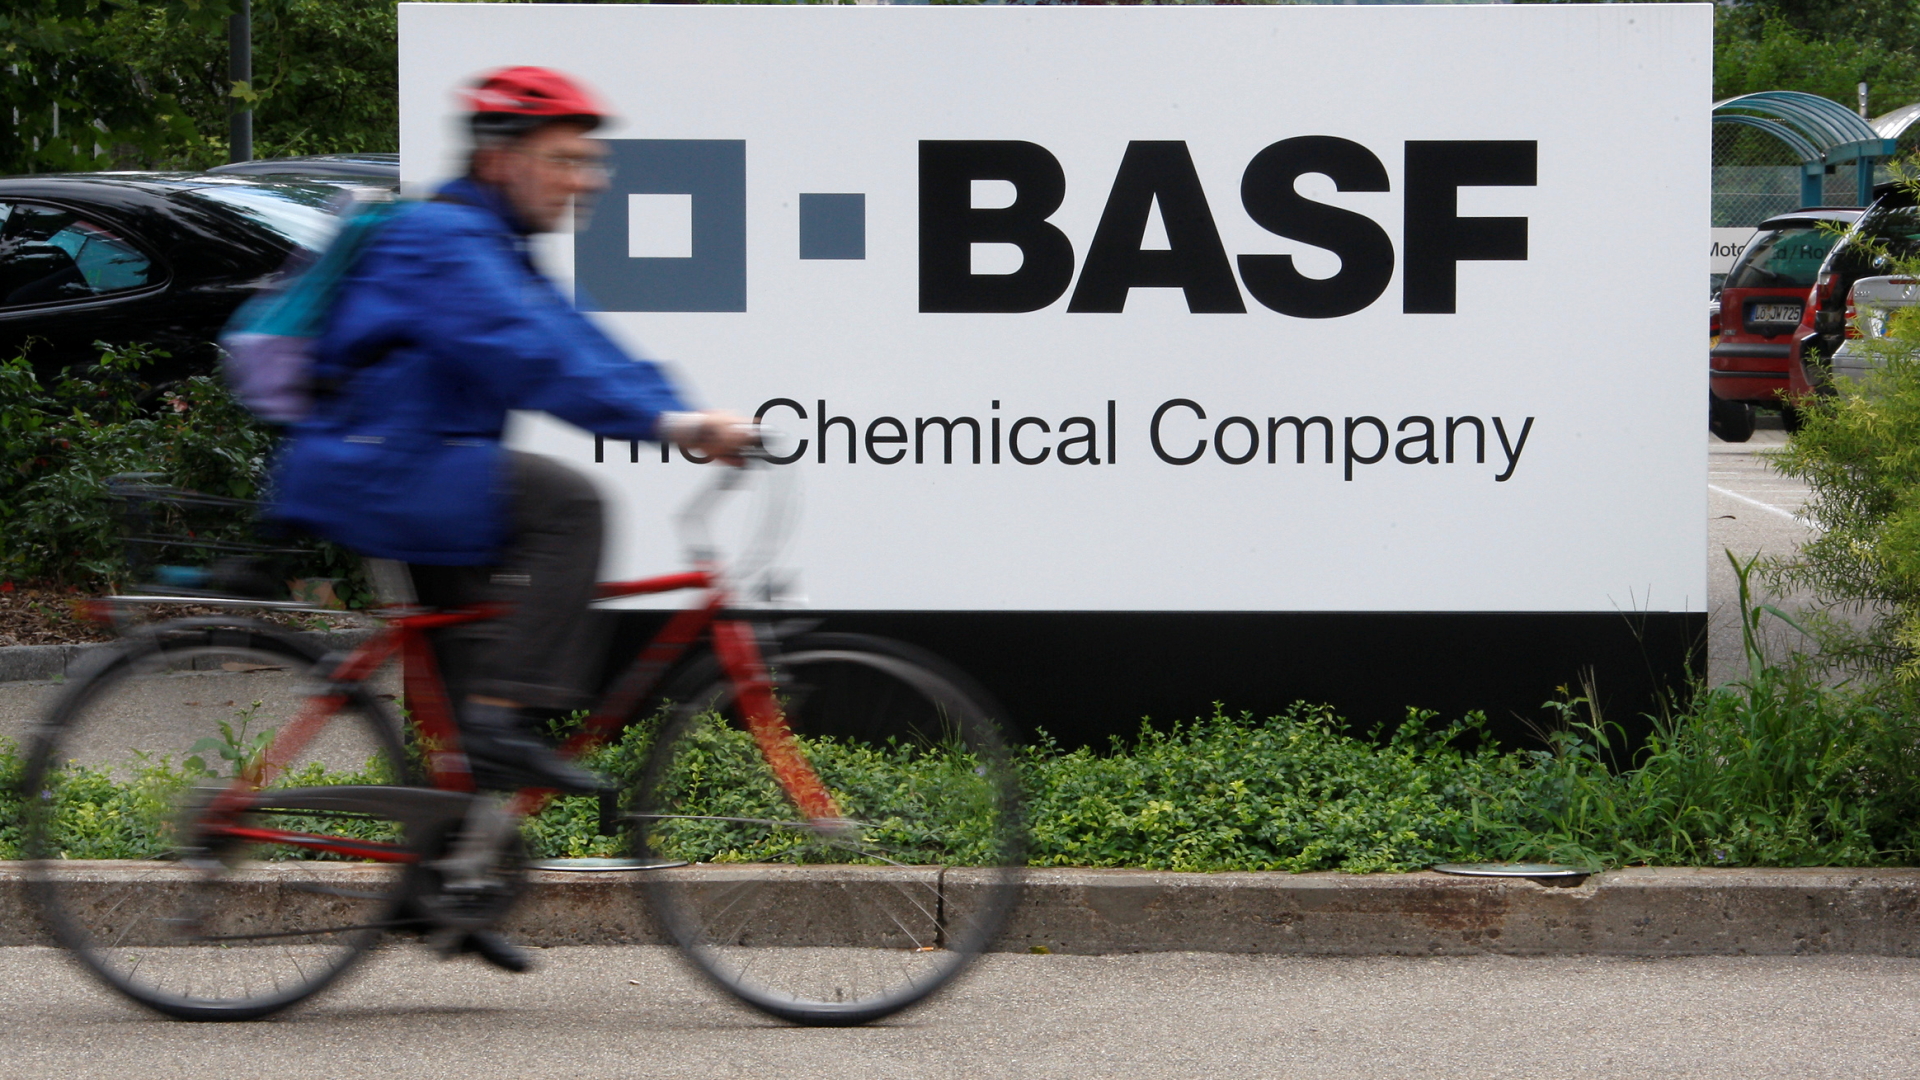 Radfahrer vor BASF-Firmenschild | REUTERS